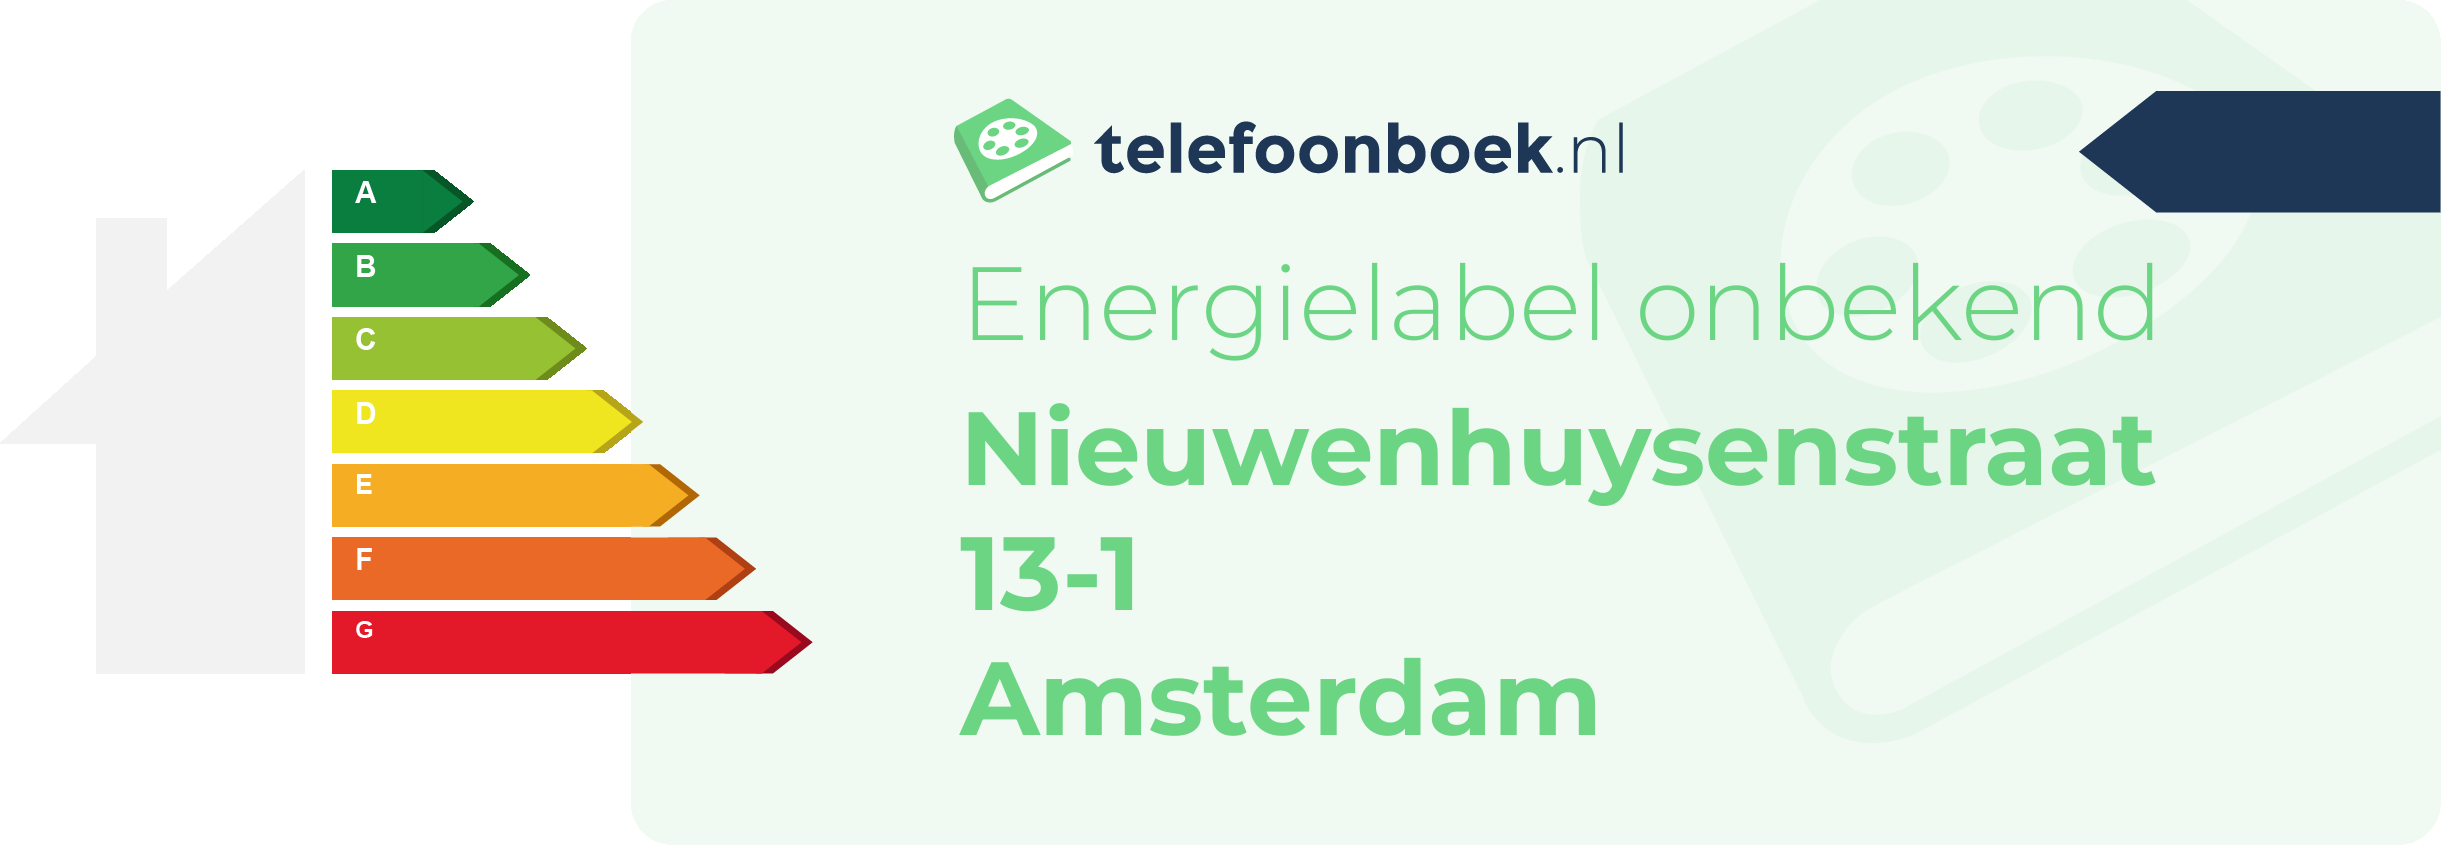 Energielabel Nieuwenhuysenstraat 13-1 Amsterdam